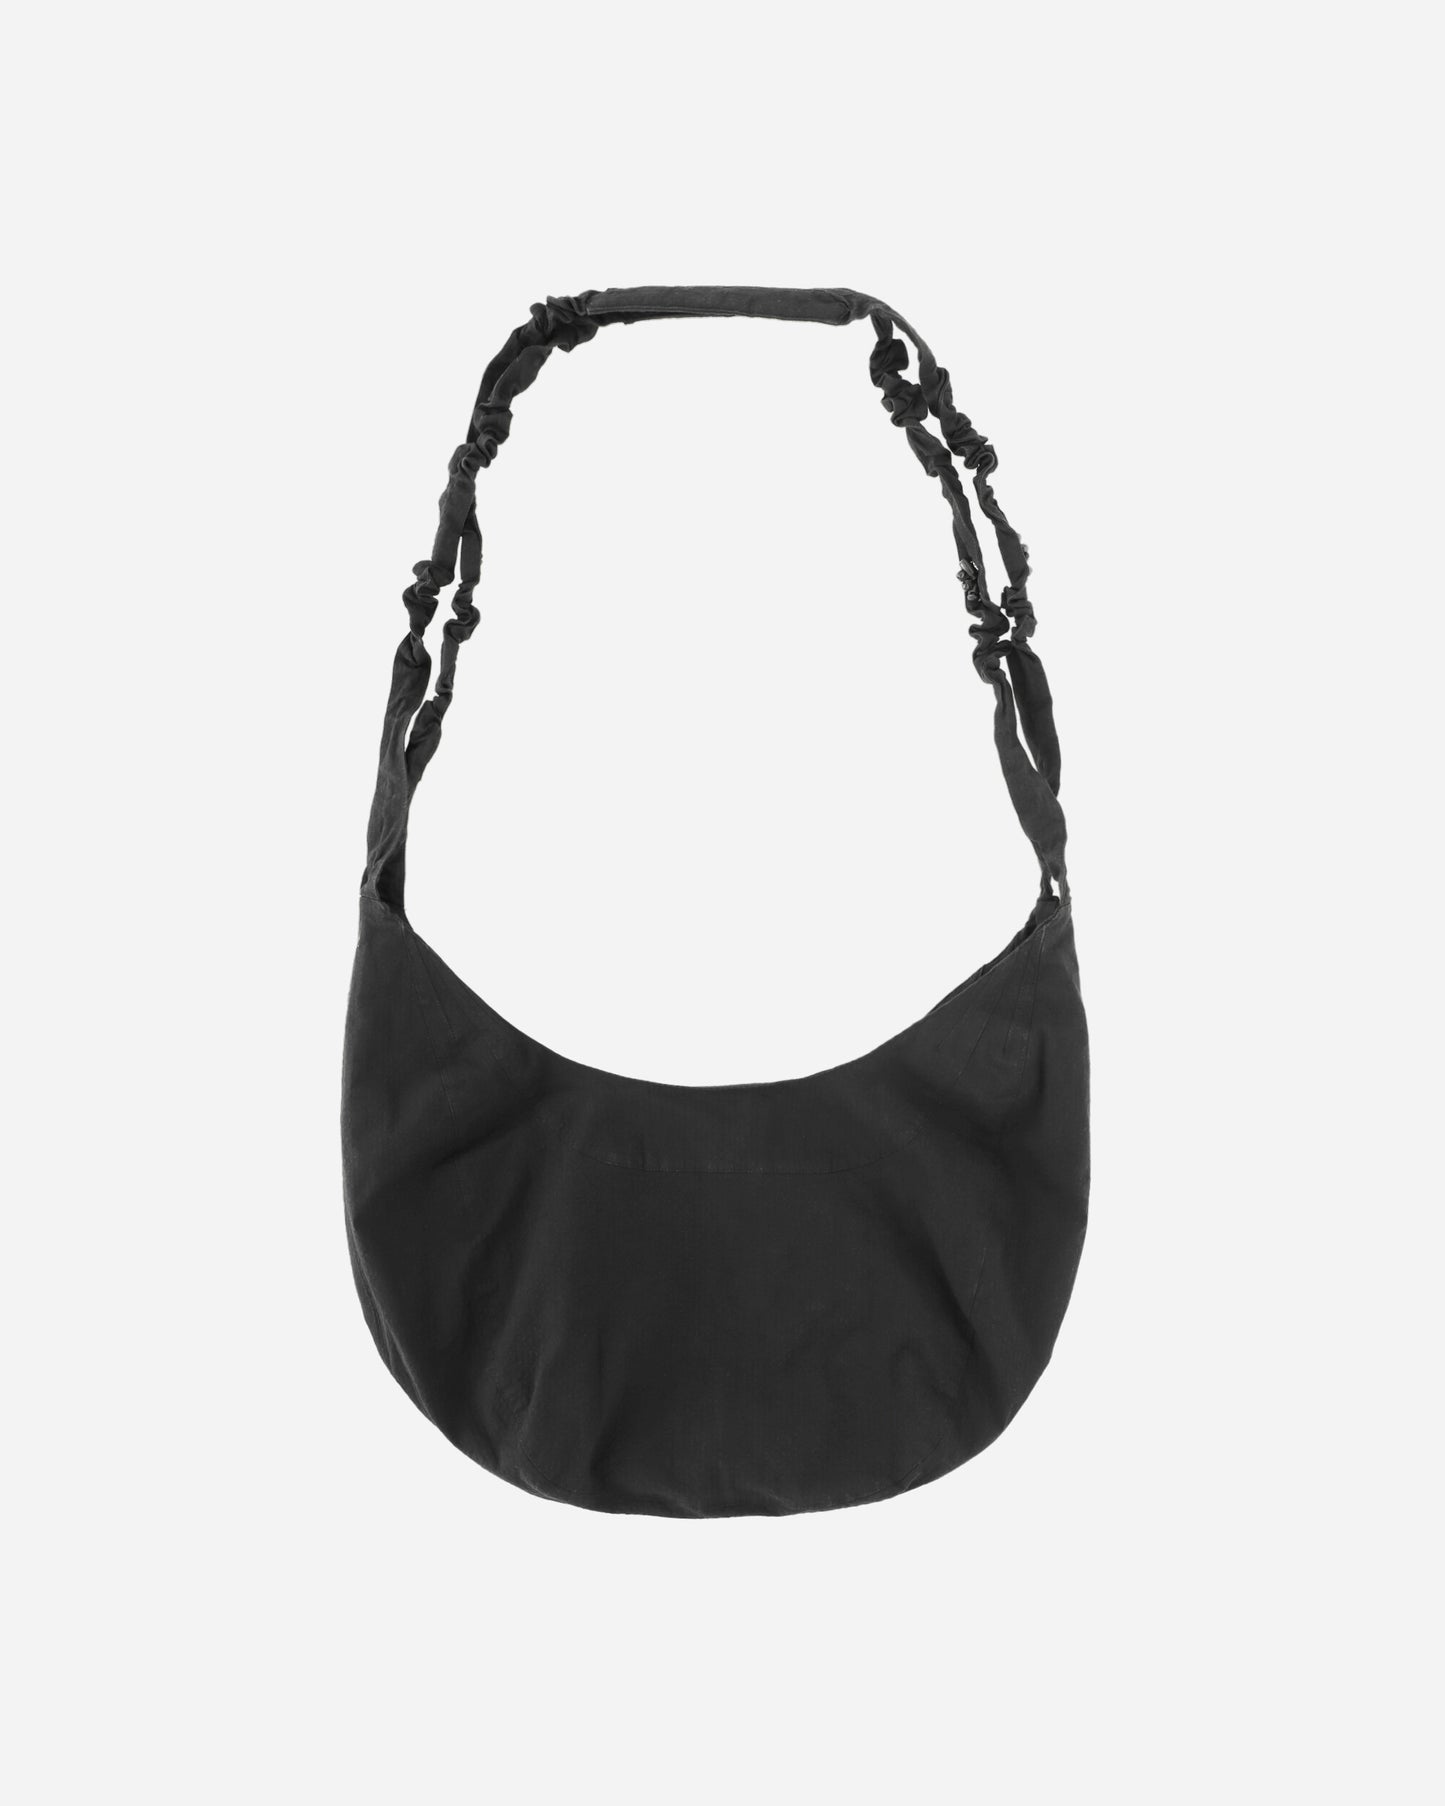 _J.L-A.L_ Torsade Bag Black Bags and Backpacks Shoulder Bags JBUW202FA02 BLK0001